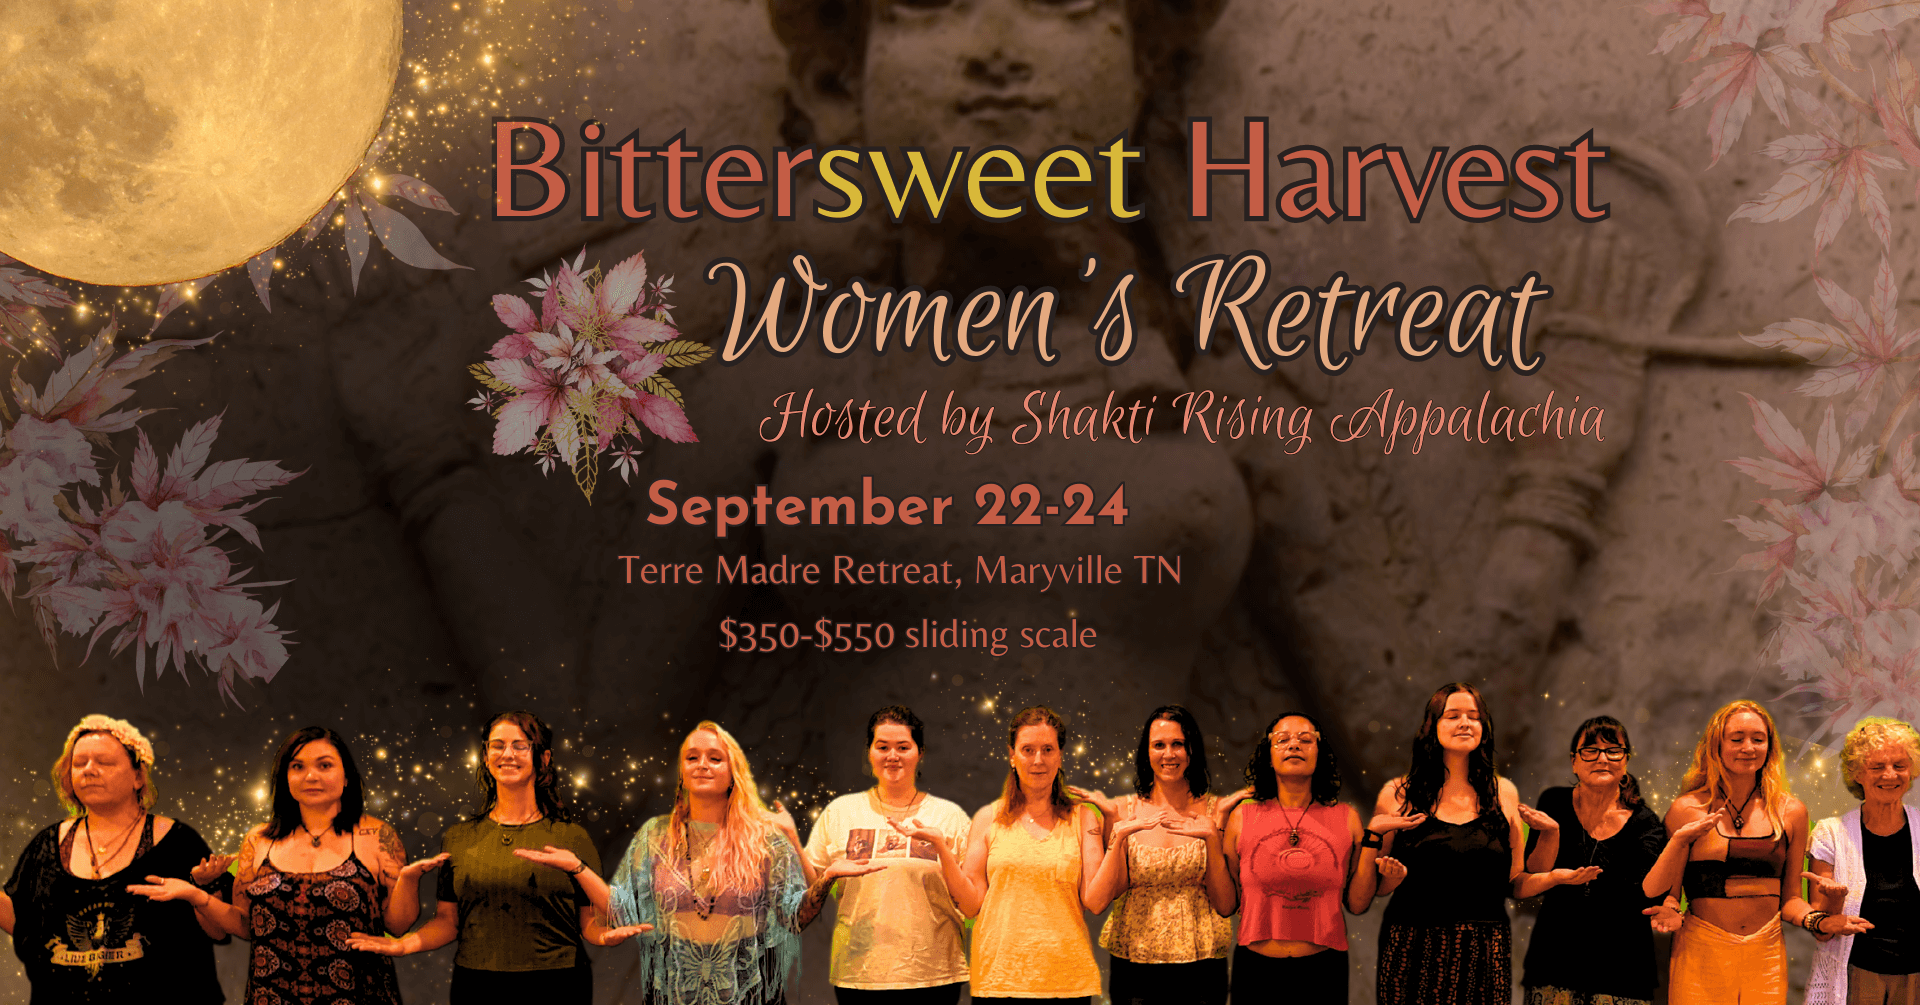 Bittersweet Harvest Women's Retreat